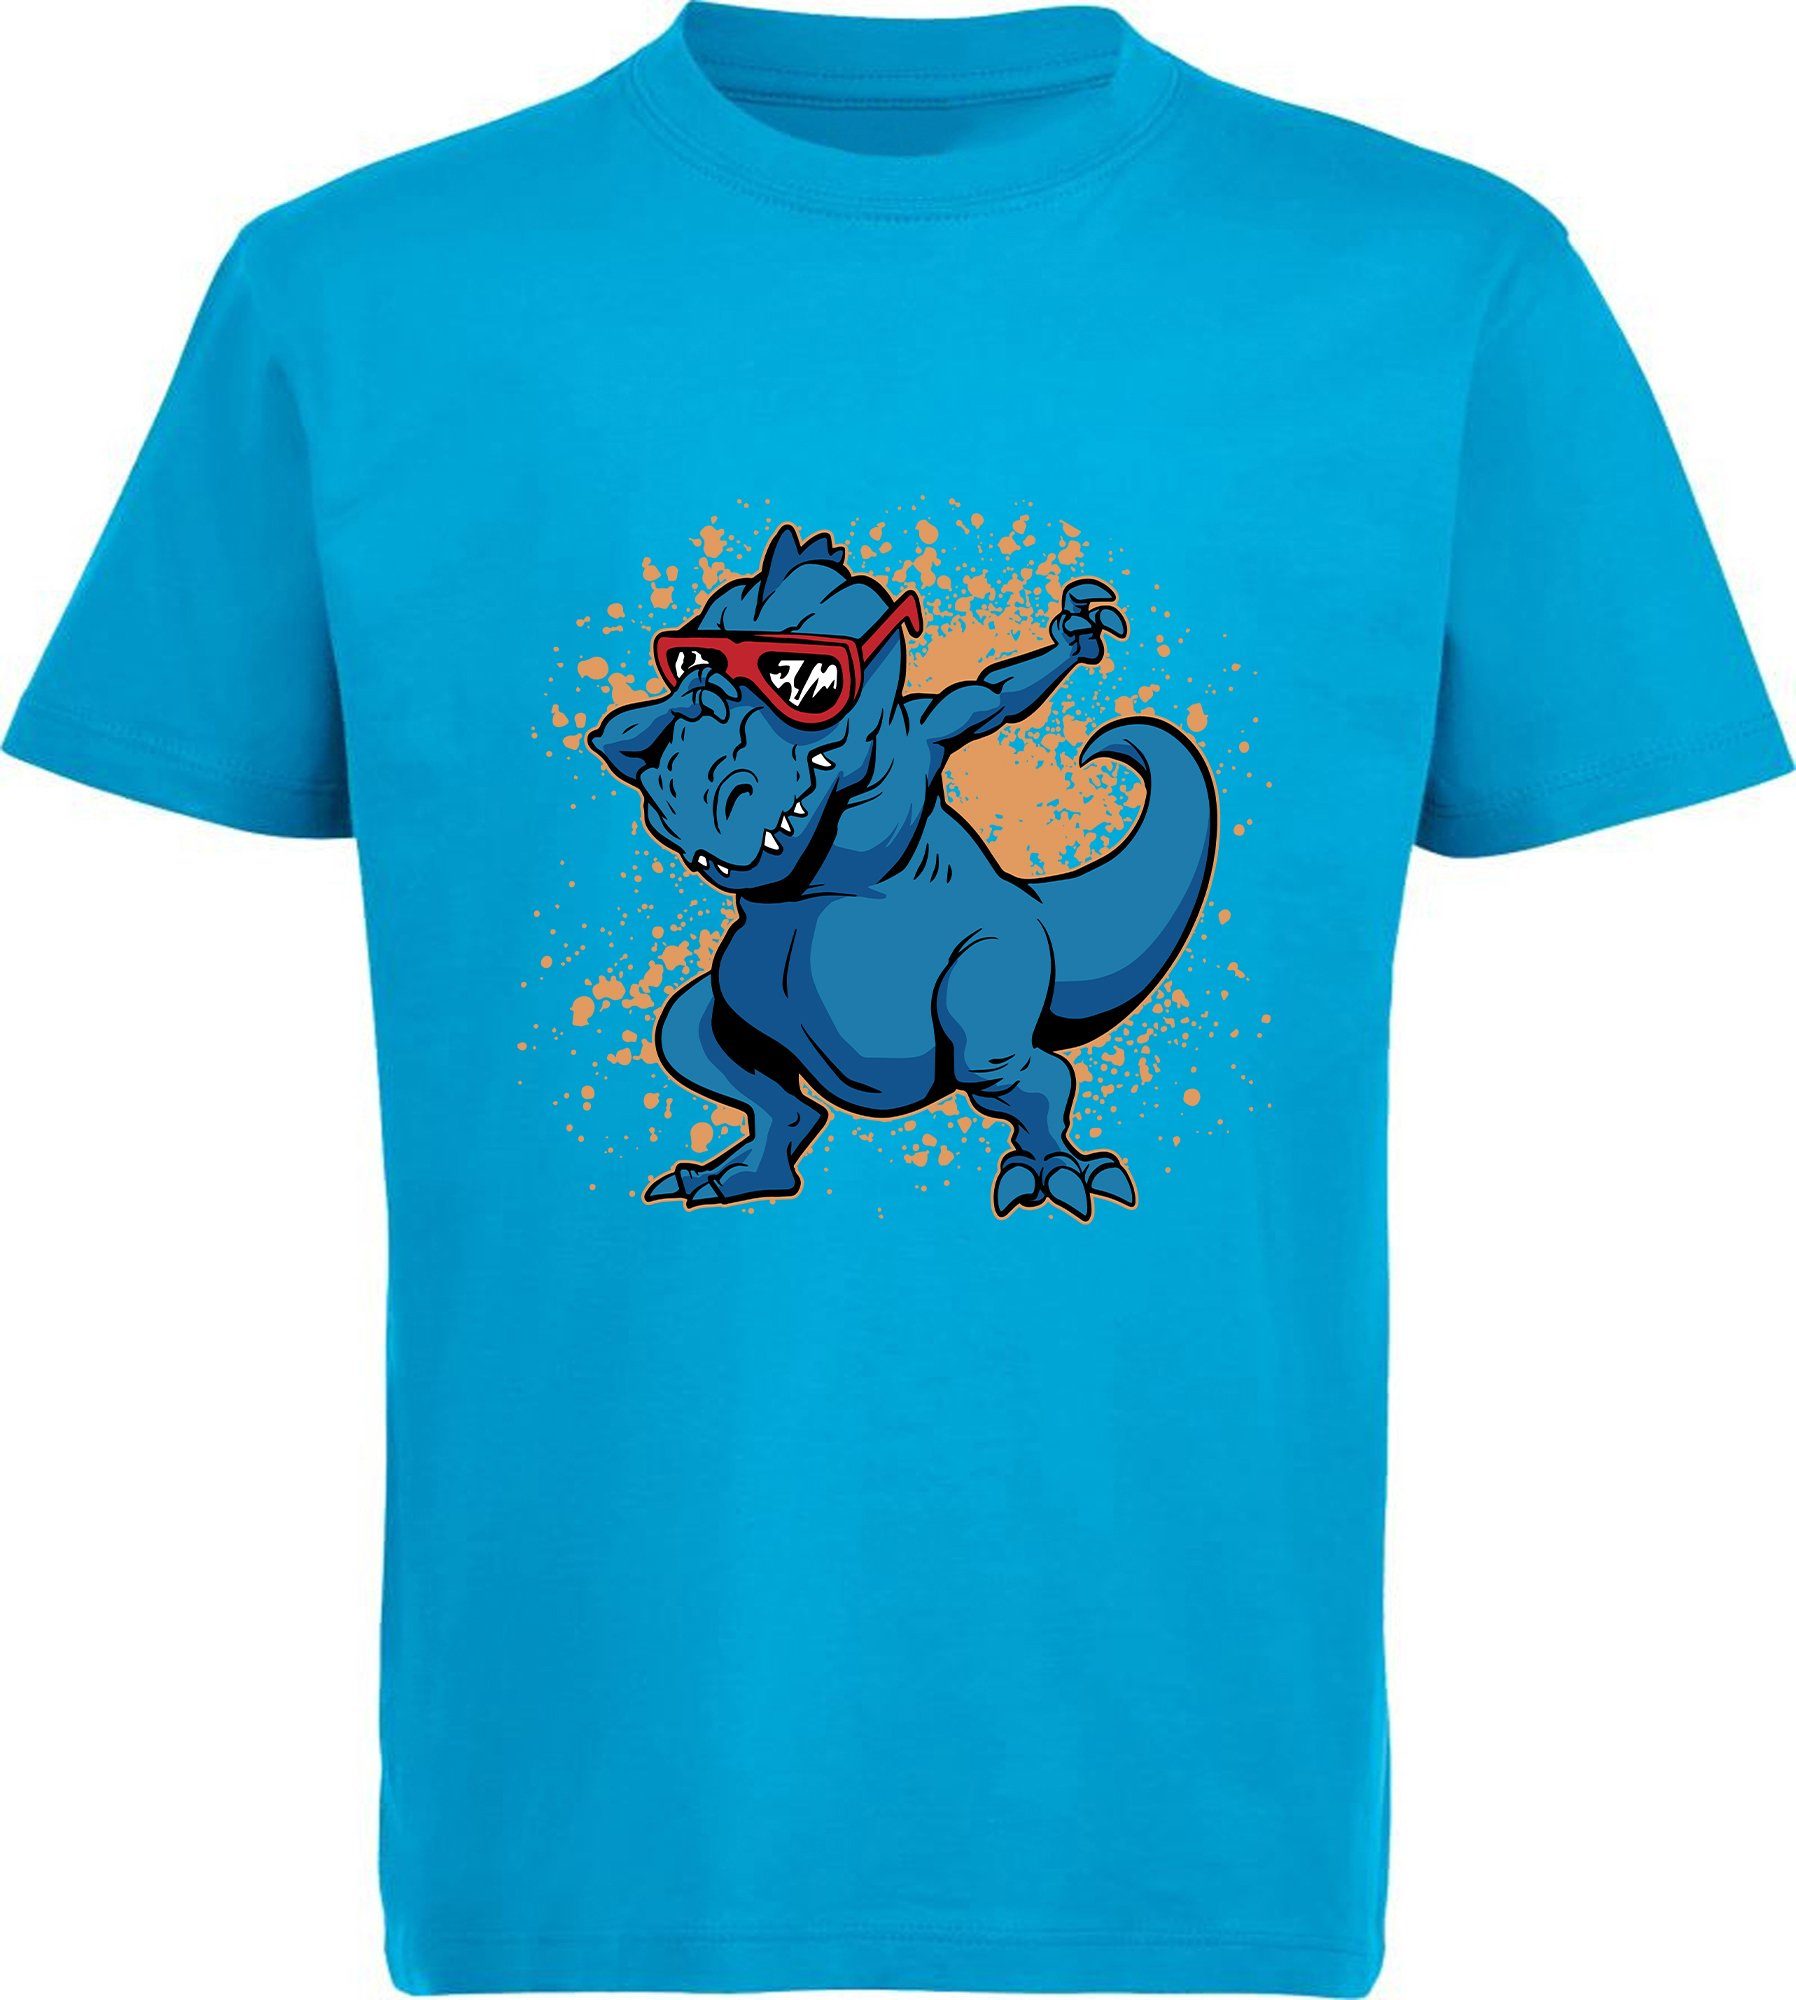 MyDesign24 T-Shirt bedrucktes Kinder T-Shirt T-Rex mit Brille am tanzen 100% Baumwolle mit Dino Aufdruck, aqua blau i49